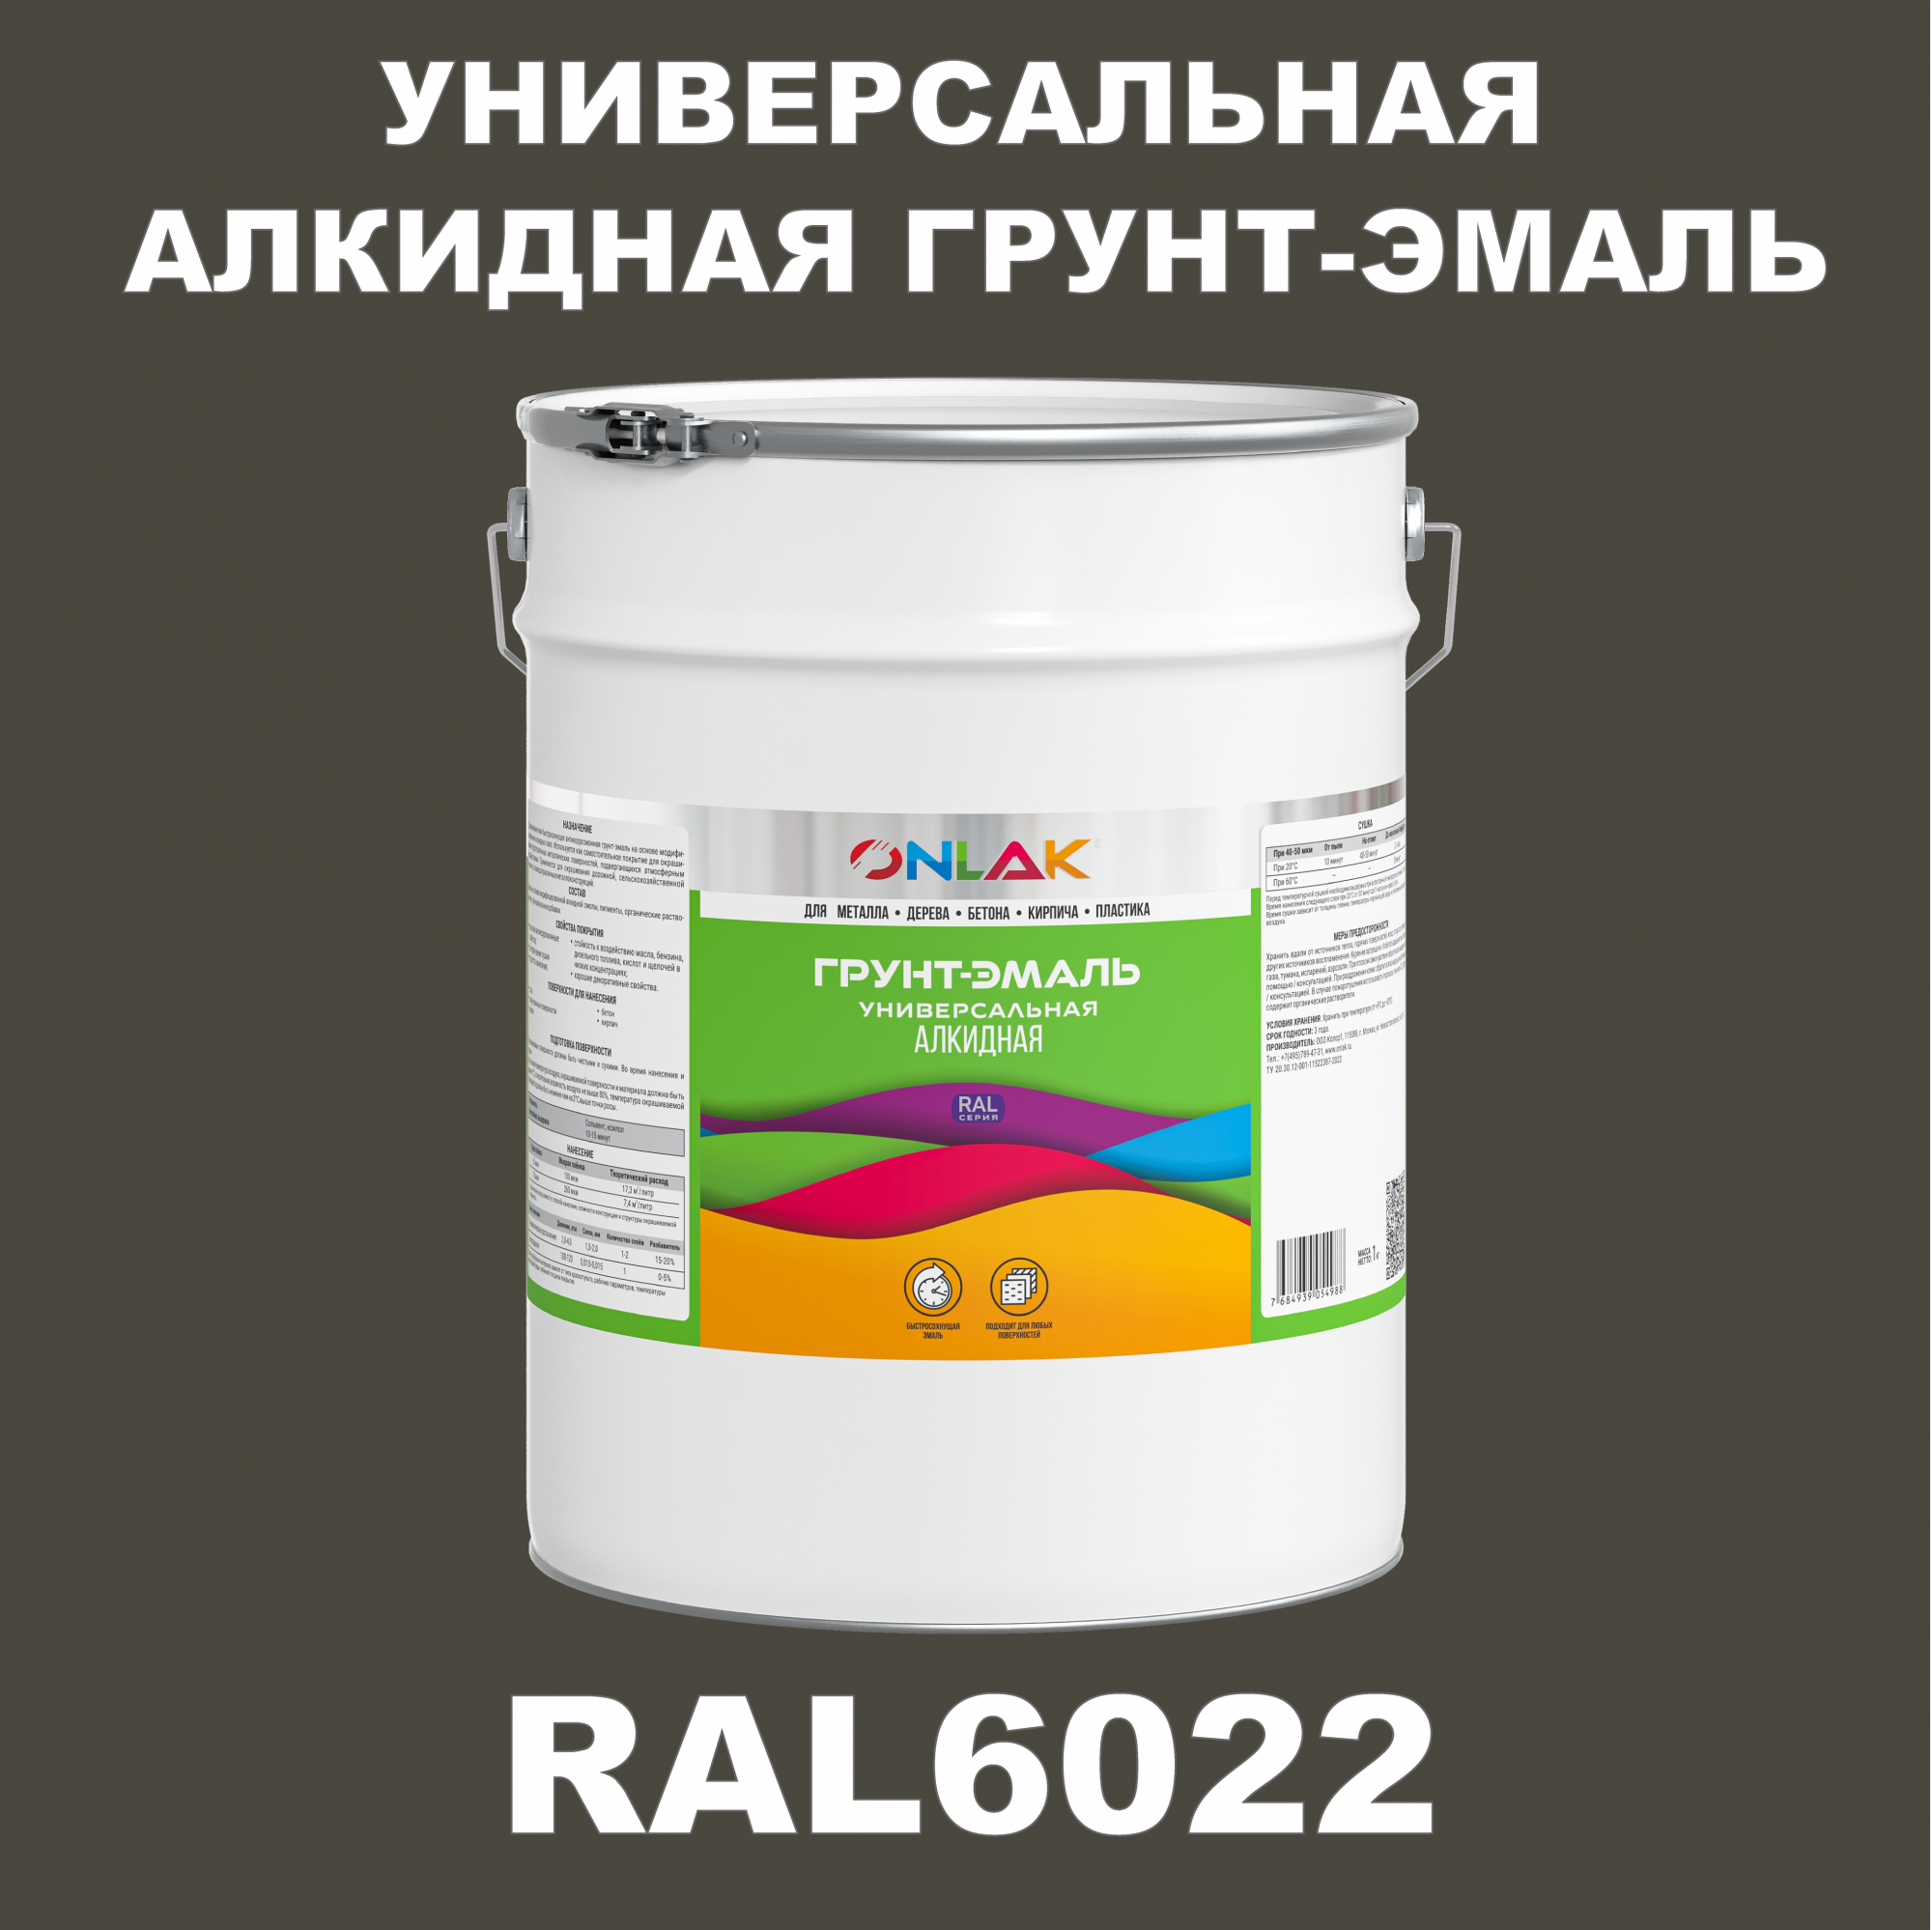 Грунт-эмаль ONLAK 1К RAL6022 антикоррозионная алкидная по металлу по ржавчине 20 кг грунт эмаль yollo по ржавчине алкидная зеленая 0 9 кг